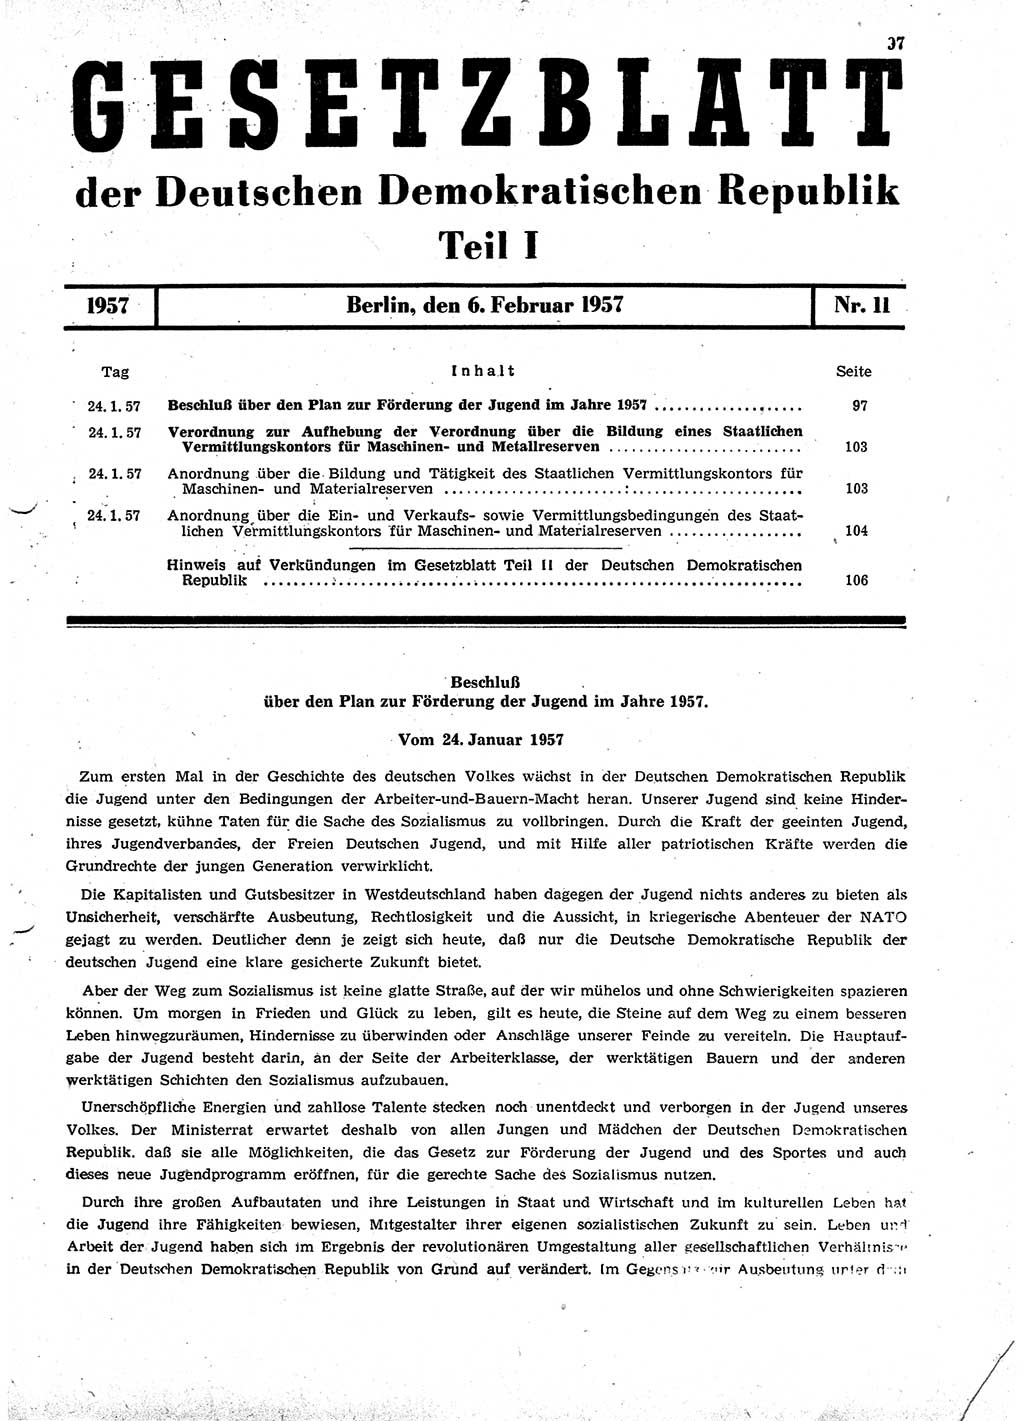 Gesetzblatt (GBl.) der Deutschen Demokratischen Republik (DDR) Teil Ⅰ 1957, Seite 97 (GBl. DDR Ⅰ 1957, S. 97)